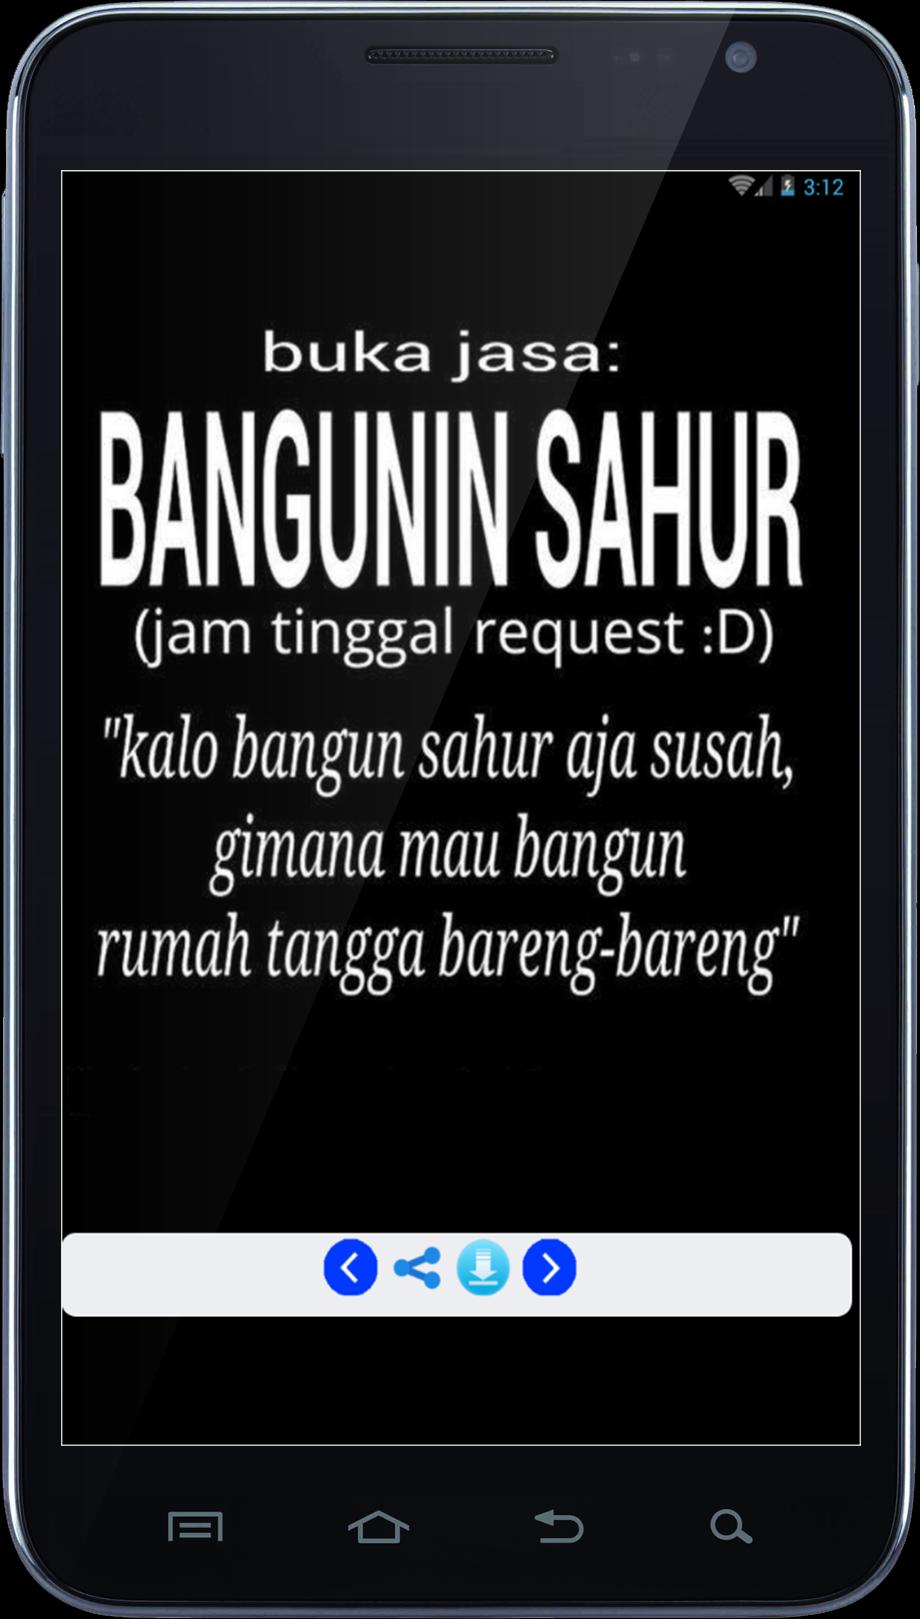 Dp Gambar Lucu Sahur For Android Apk Download